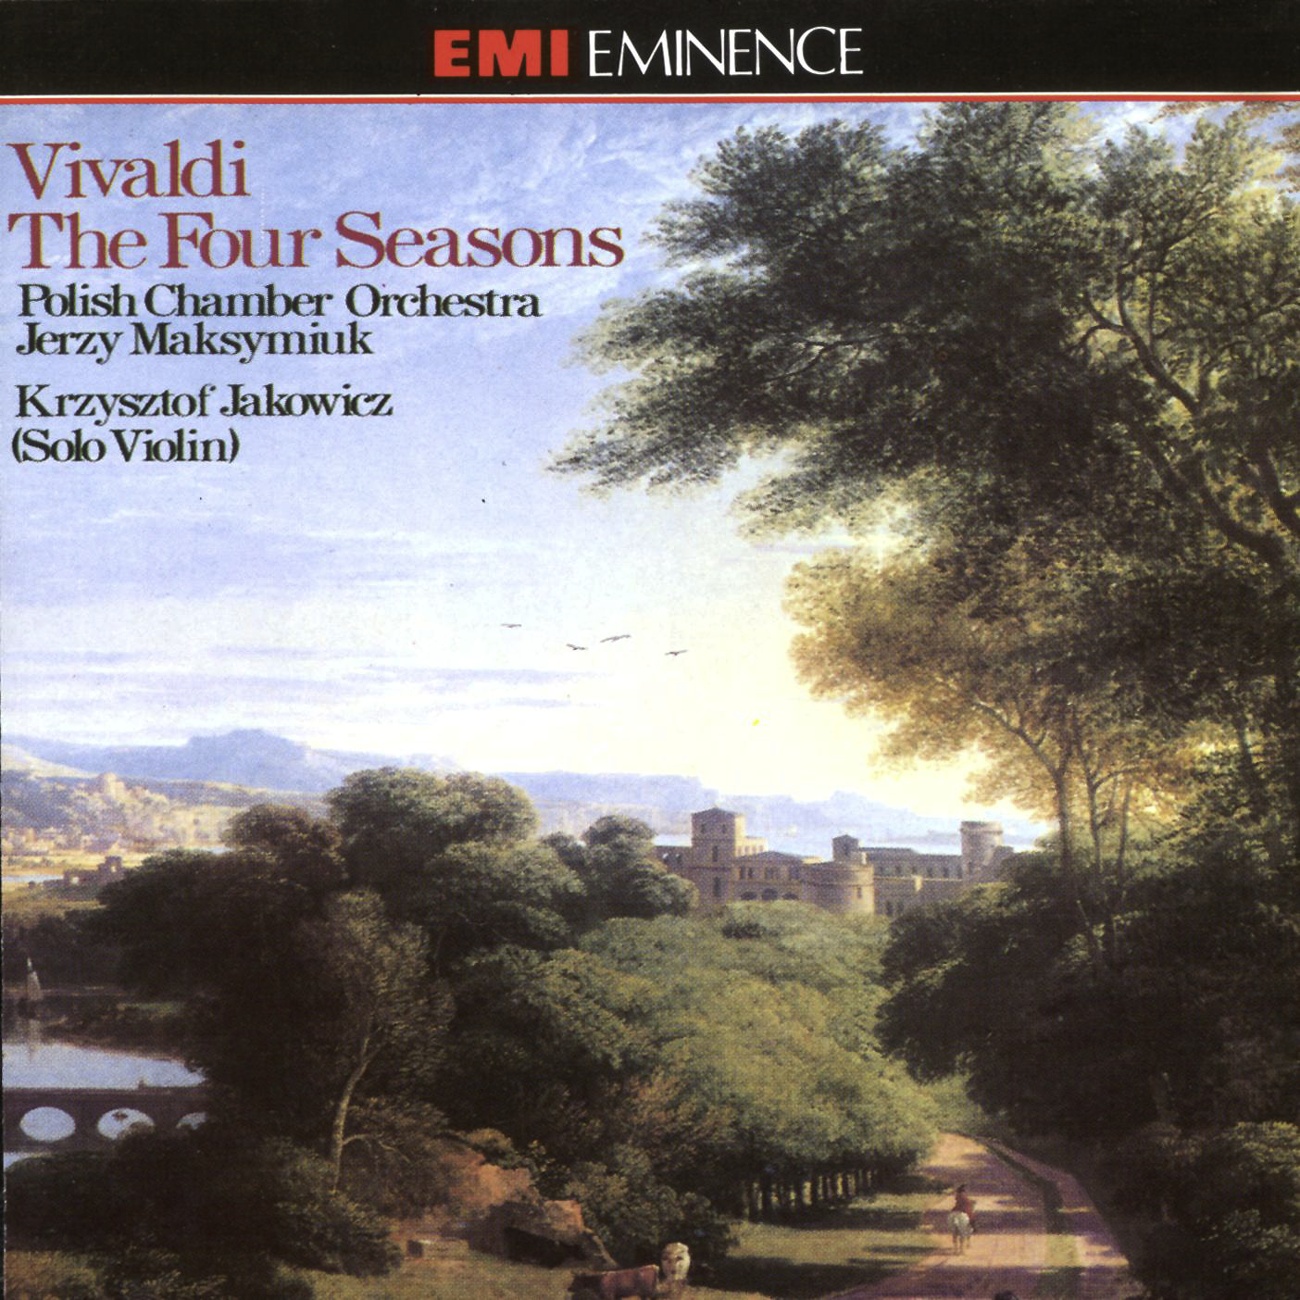 The Four Seasons Op. 8 Nos. 1-4 (1990 Digital Remaster), Concerto No. 4 in F minor (L'inverno/ Winter) RV297 (Op. 8 No. 4): II.